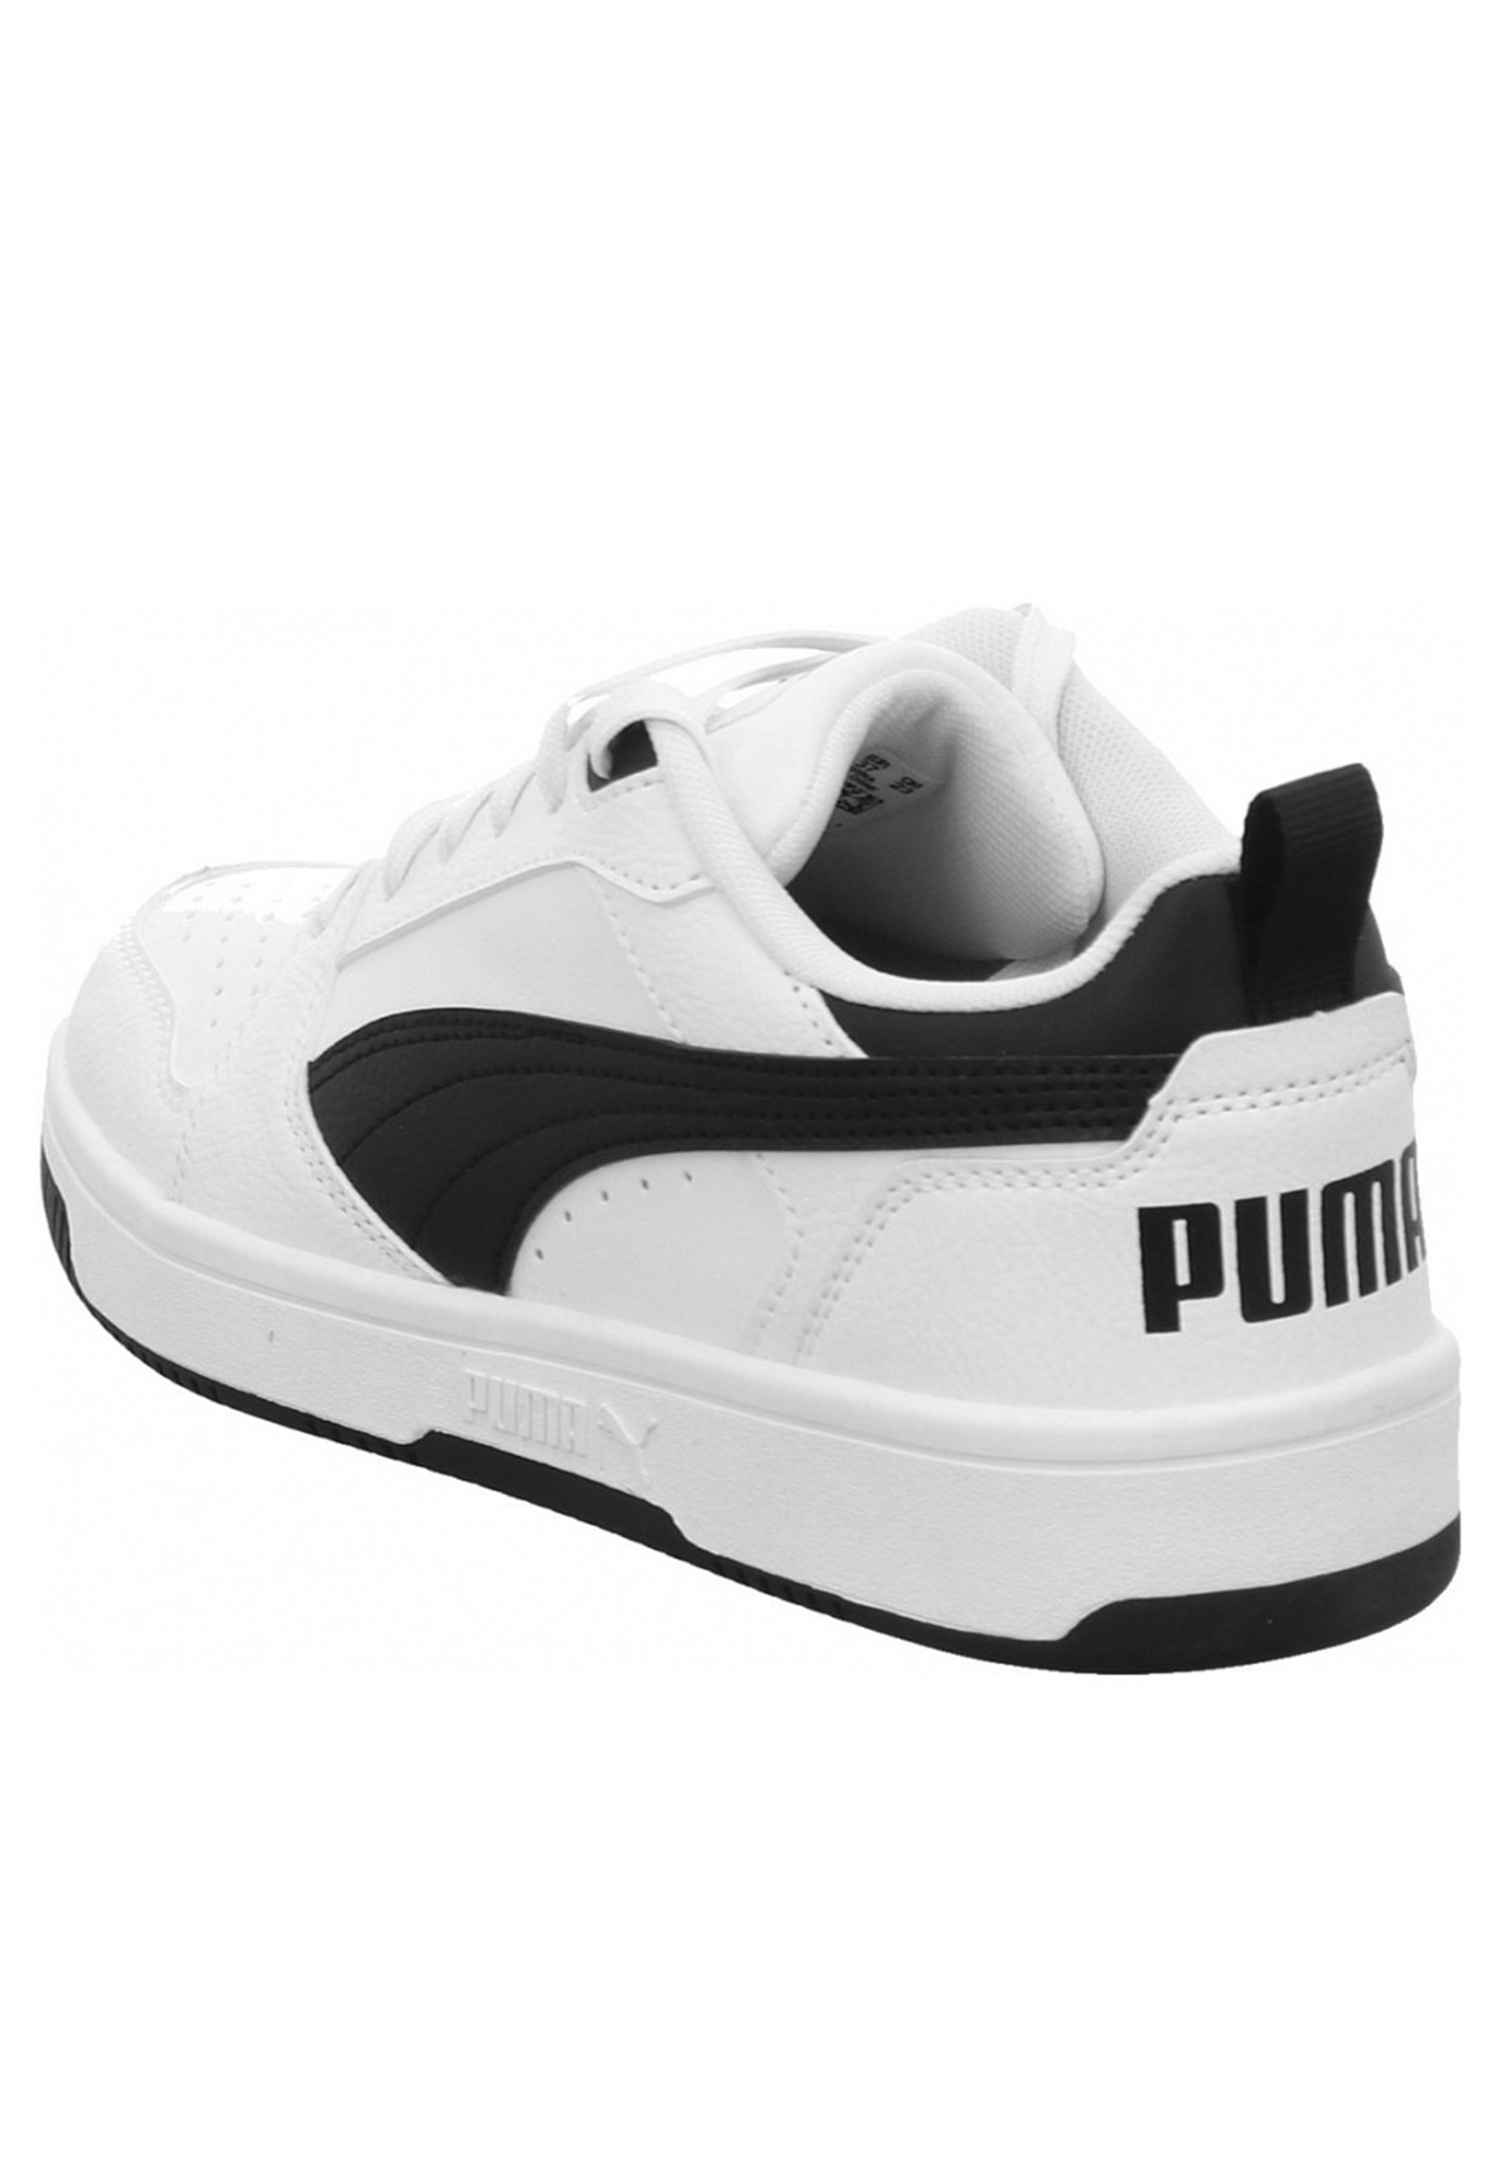 Puma Rebound V6 LOW JR Unisex Kinder Sneaker 393833 02